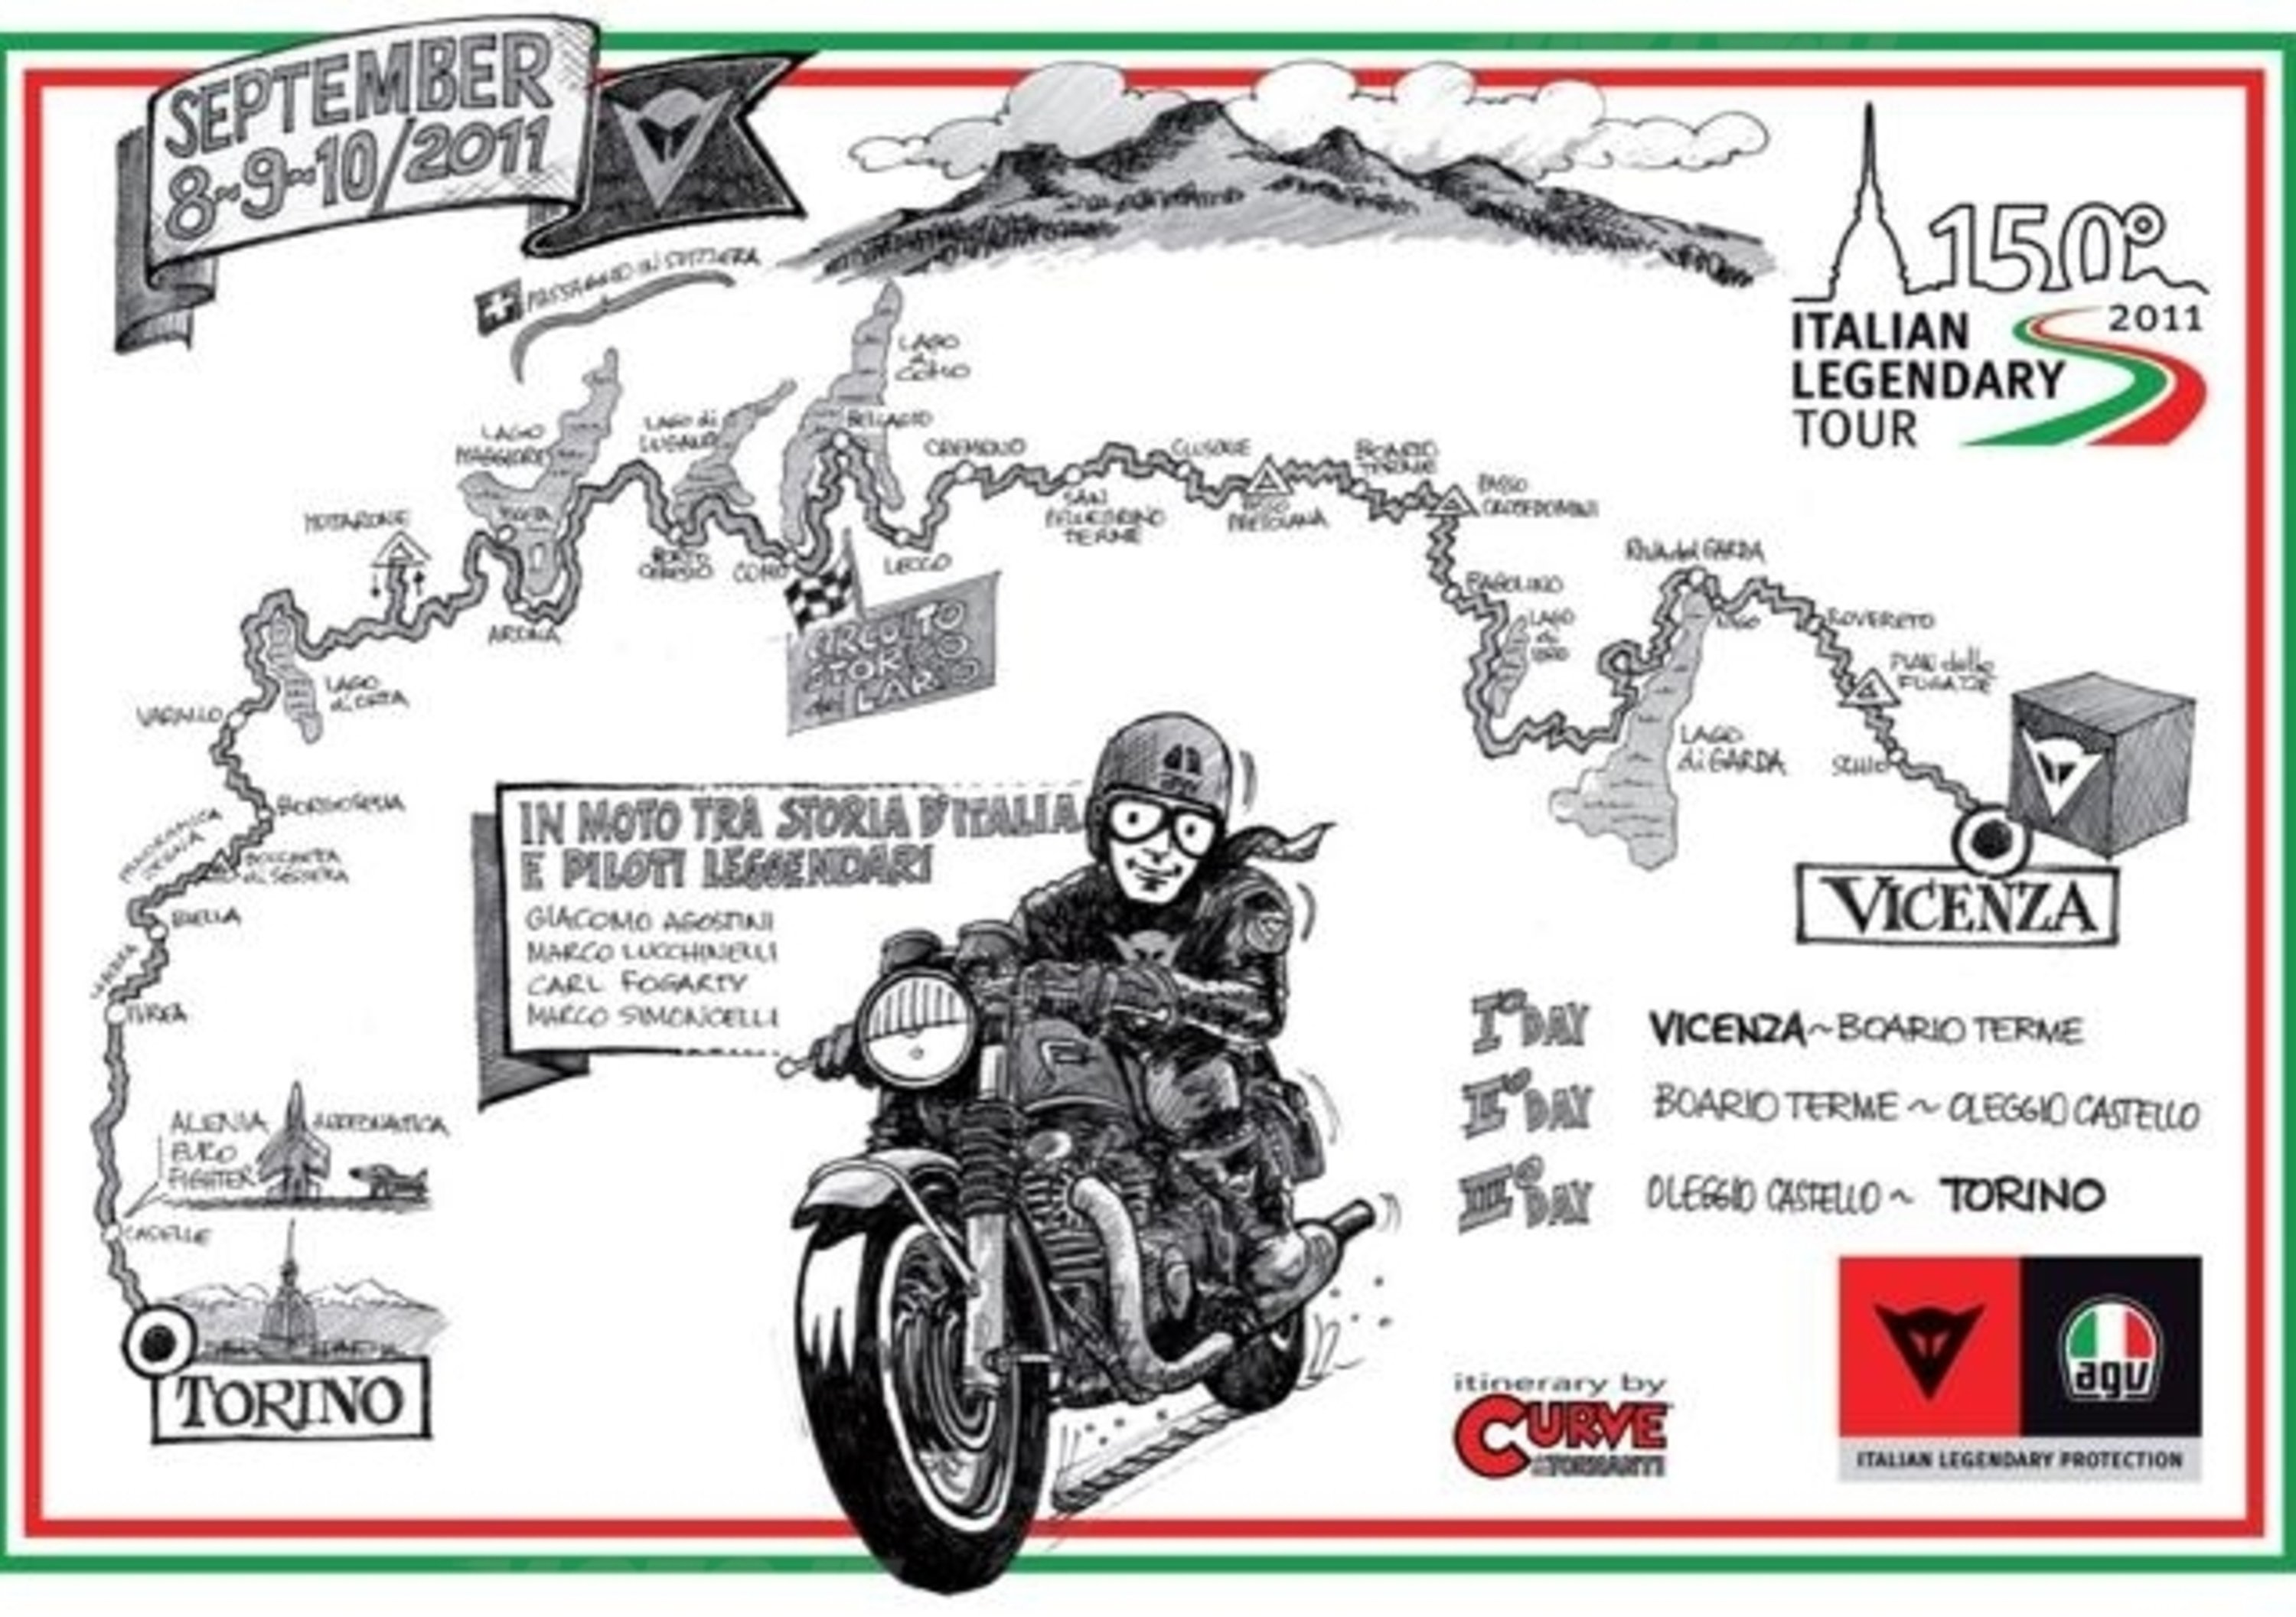 Dainese Italian Legendary Tour: al via la terza edizione